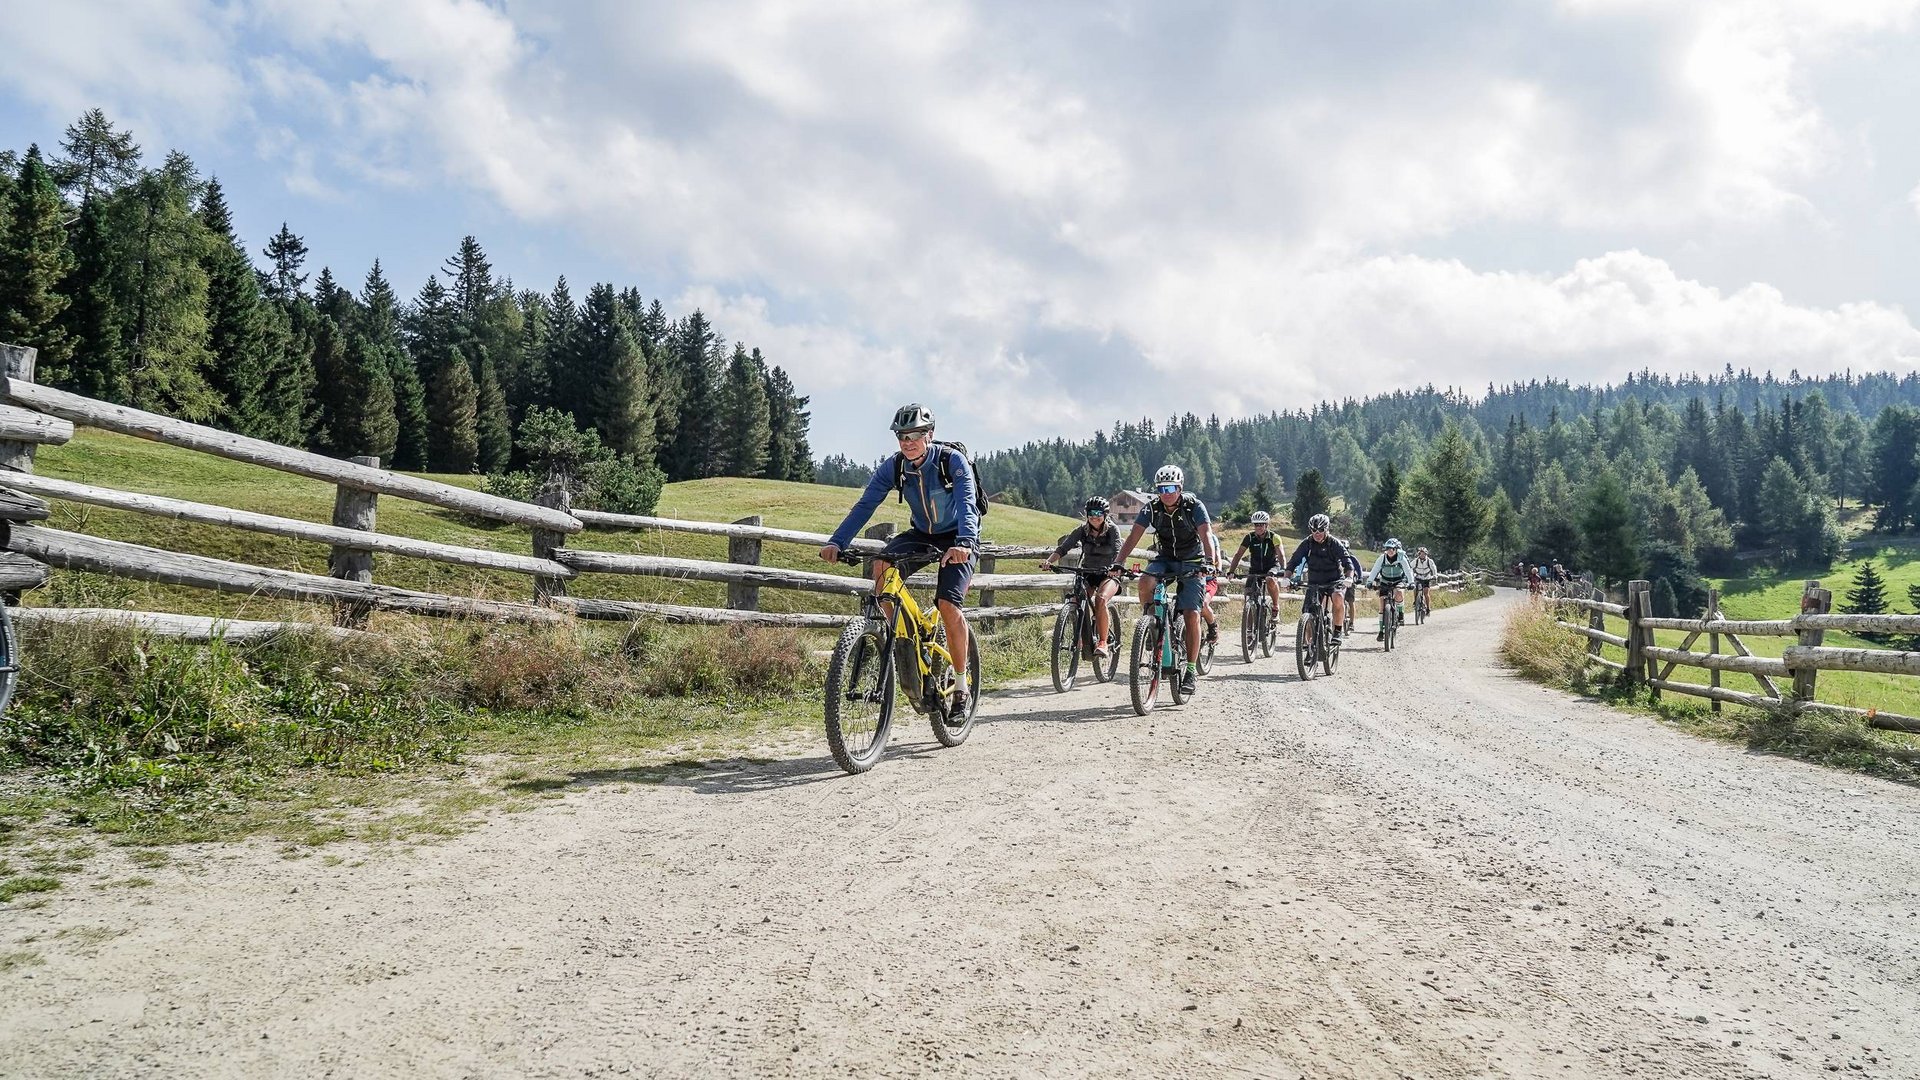 Meransen in South Tyrol: pure biking fun